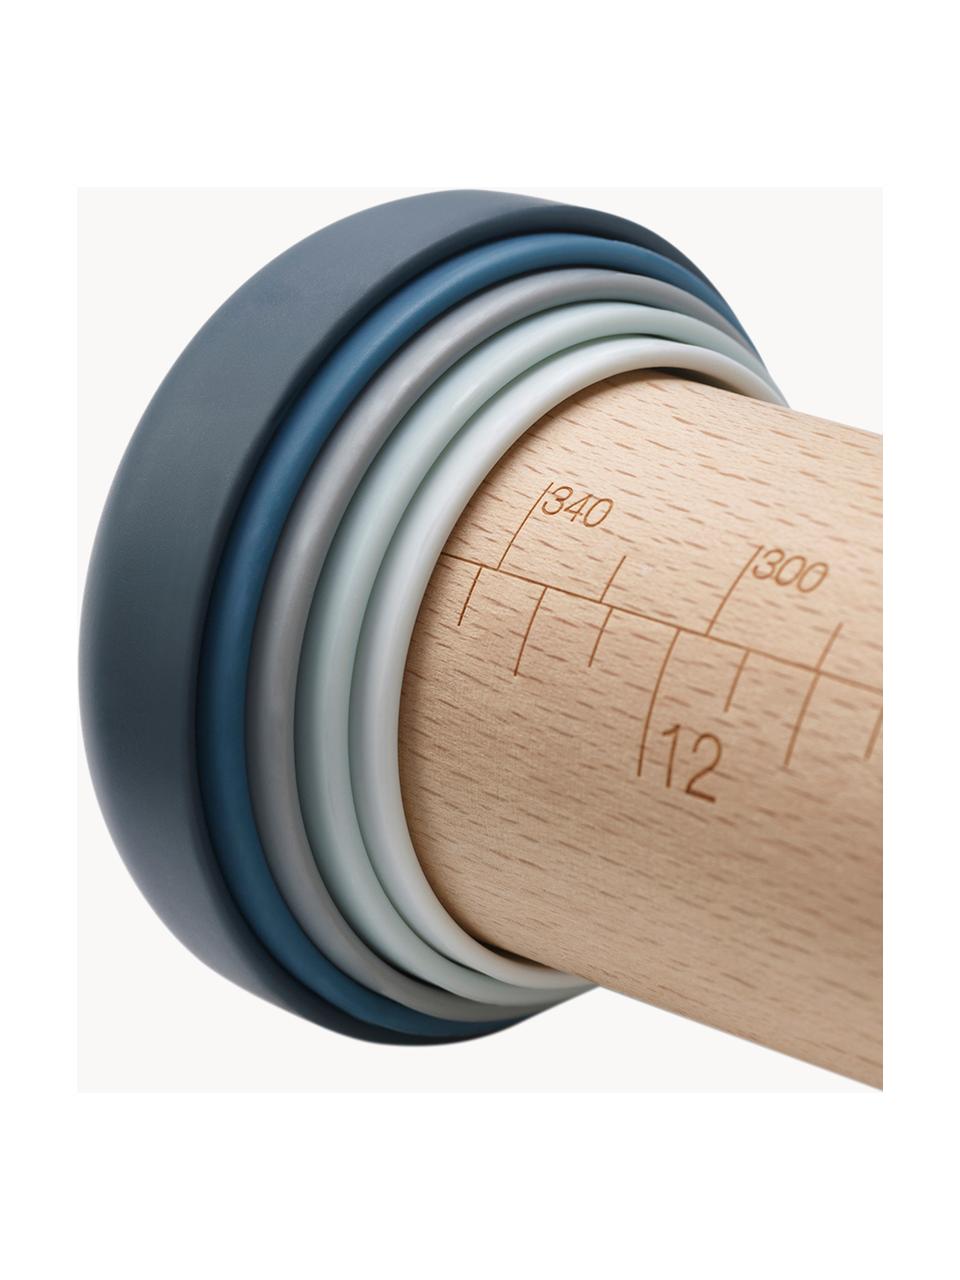 Nudelholz Precision Pin aus Buchenholz, Buchenholz, Kunststoff, Buchenholz, B 6 x L 42 cm